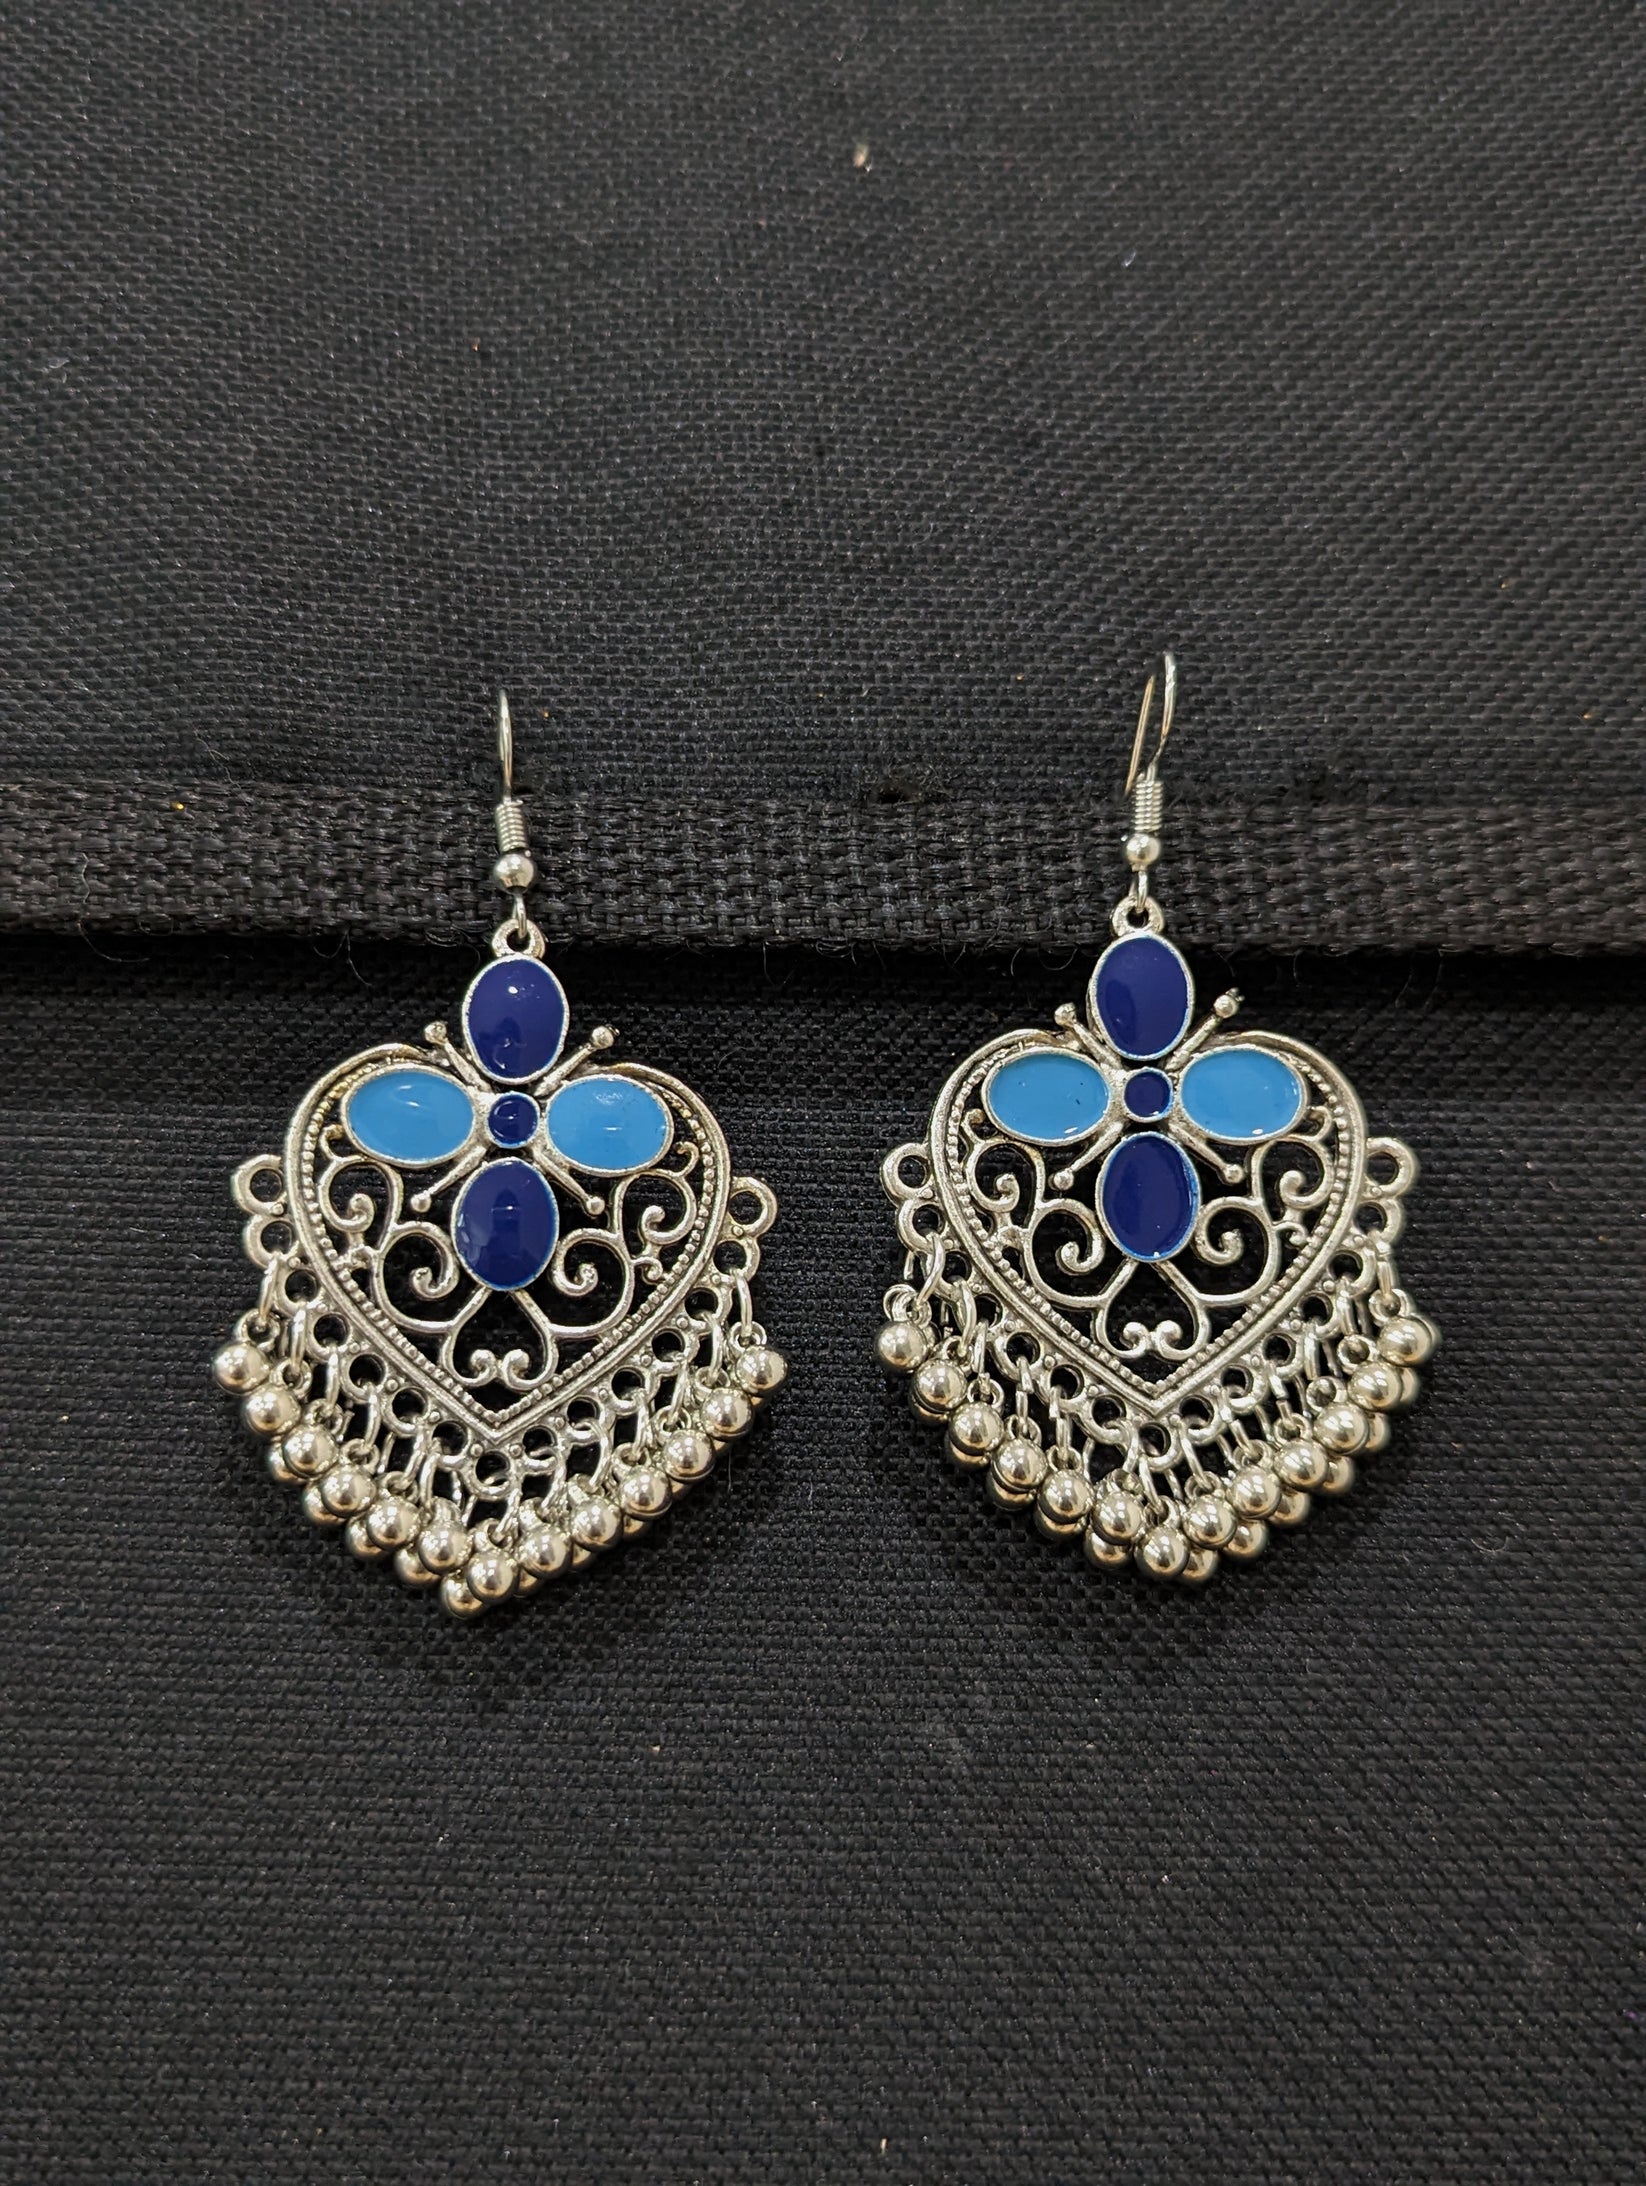 Antique silver enamel hook drop Earrings - 5 designs – Simpliful Jewelry